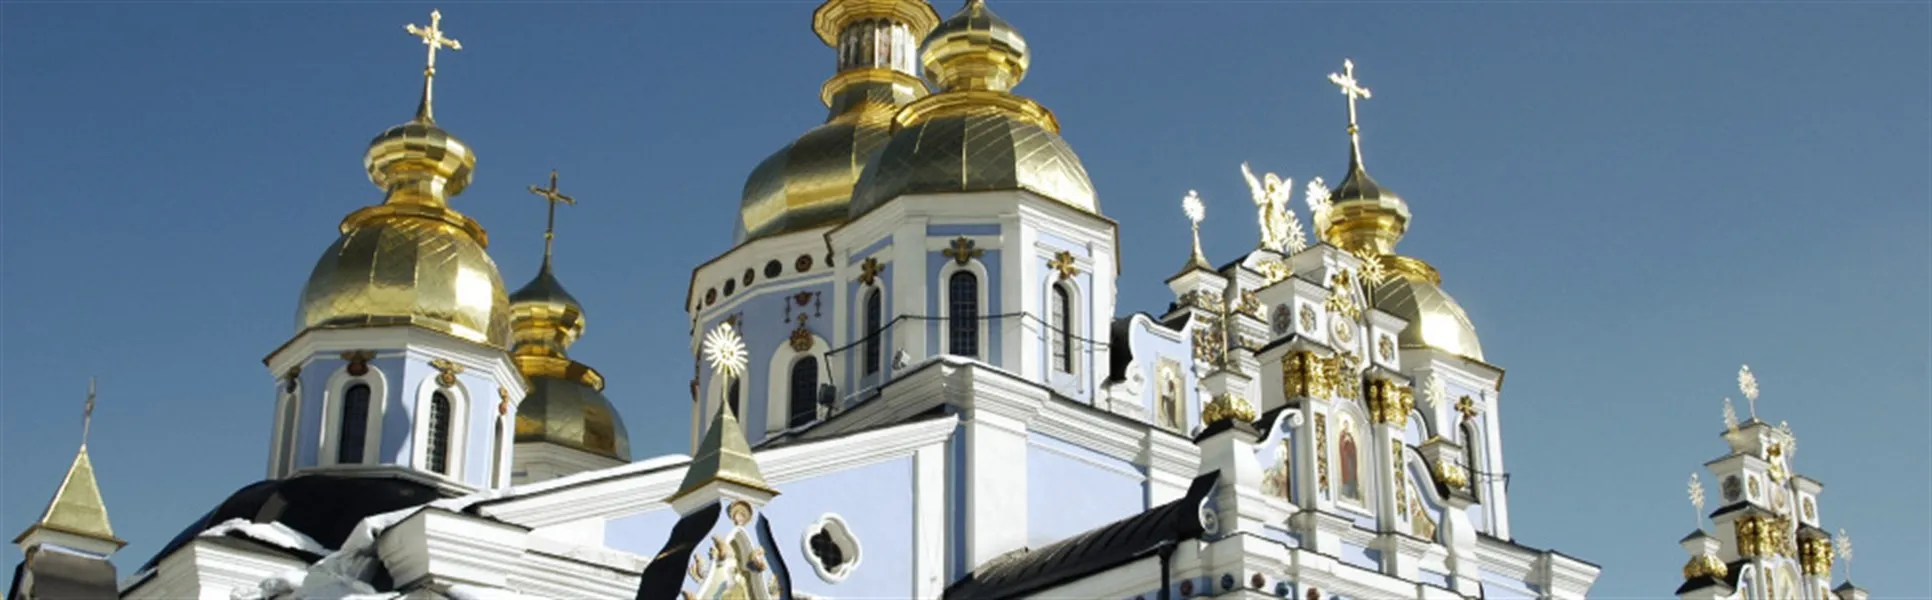 Ukraine kiev church